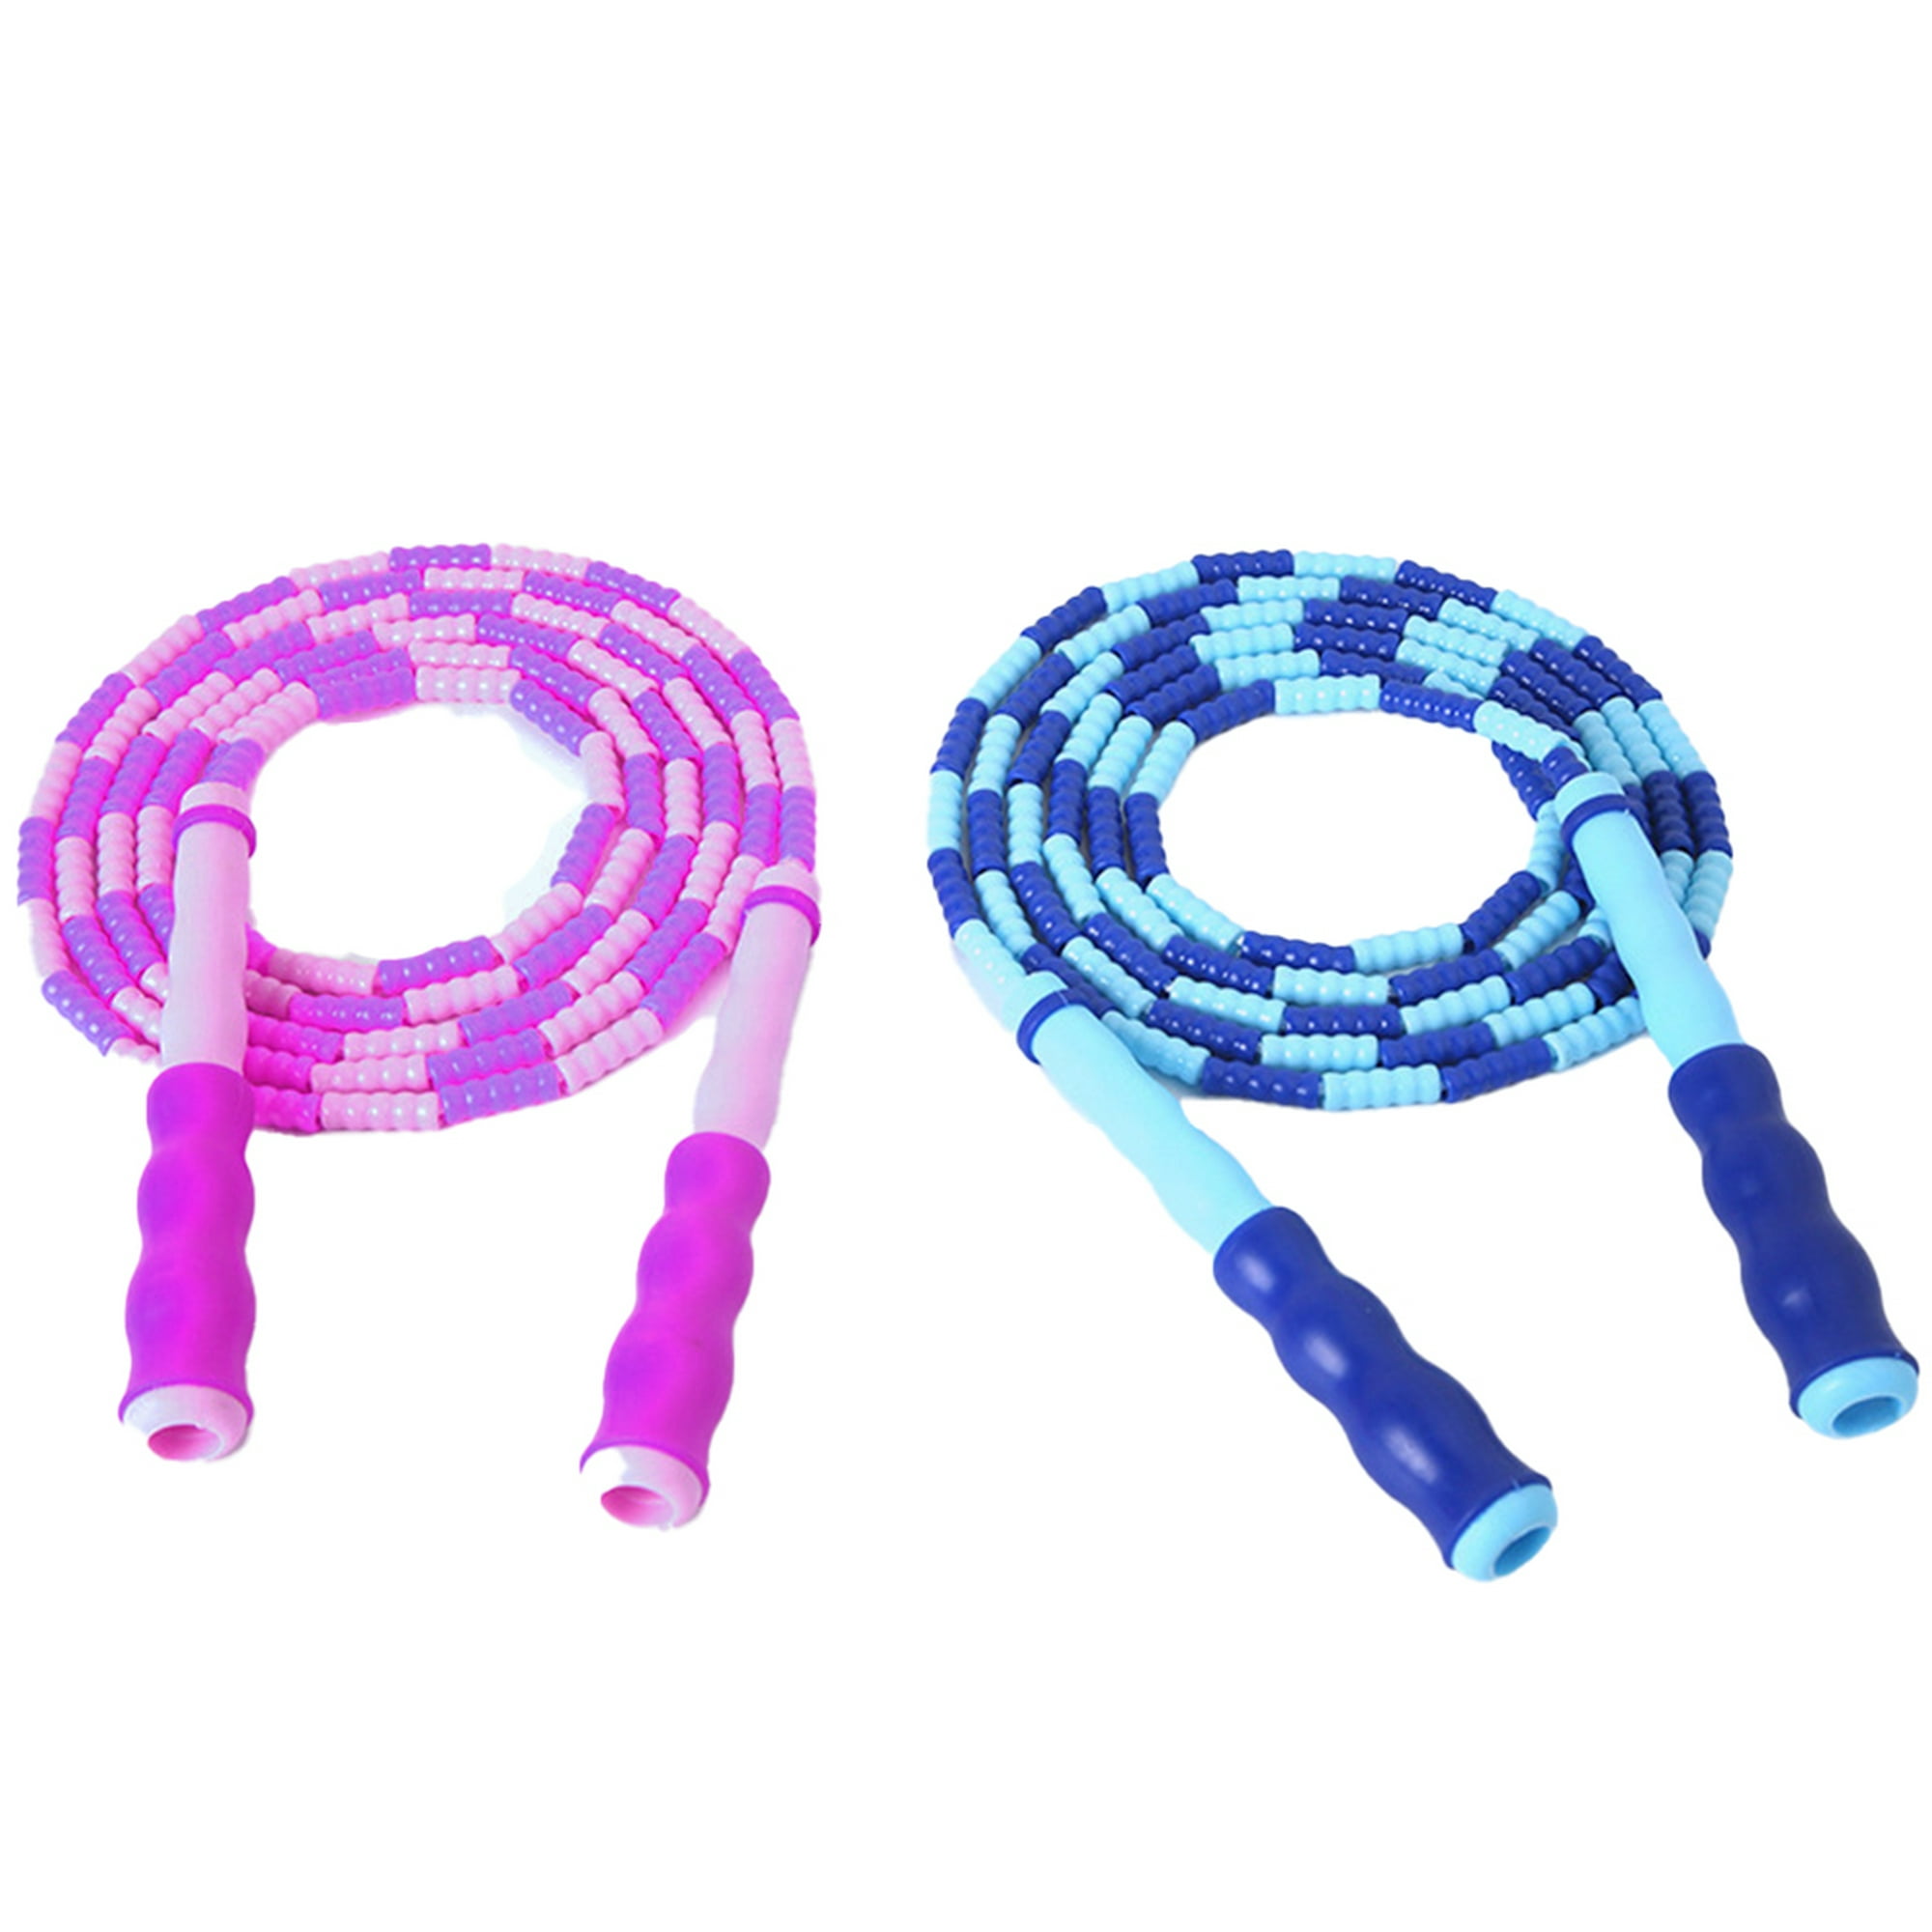 Cuerda de saltar, cuerda de saltar segmentada ajustable sin enredos con  cuentas de plástico PP para niños y estudiantes